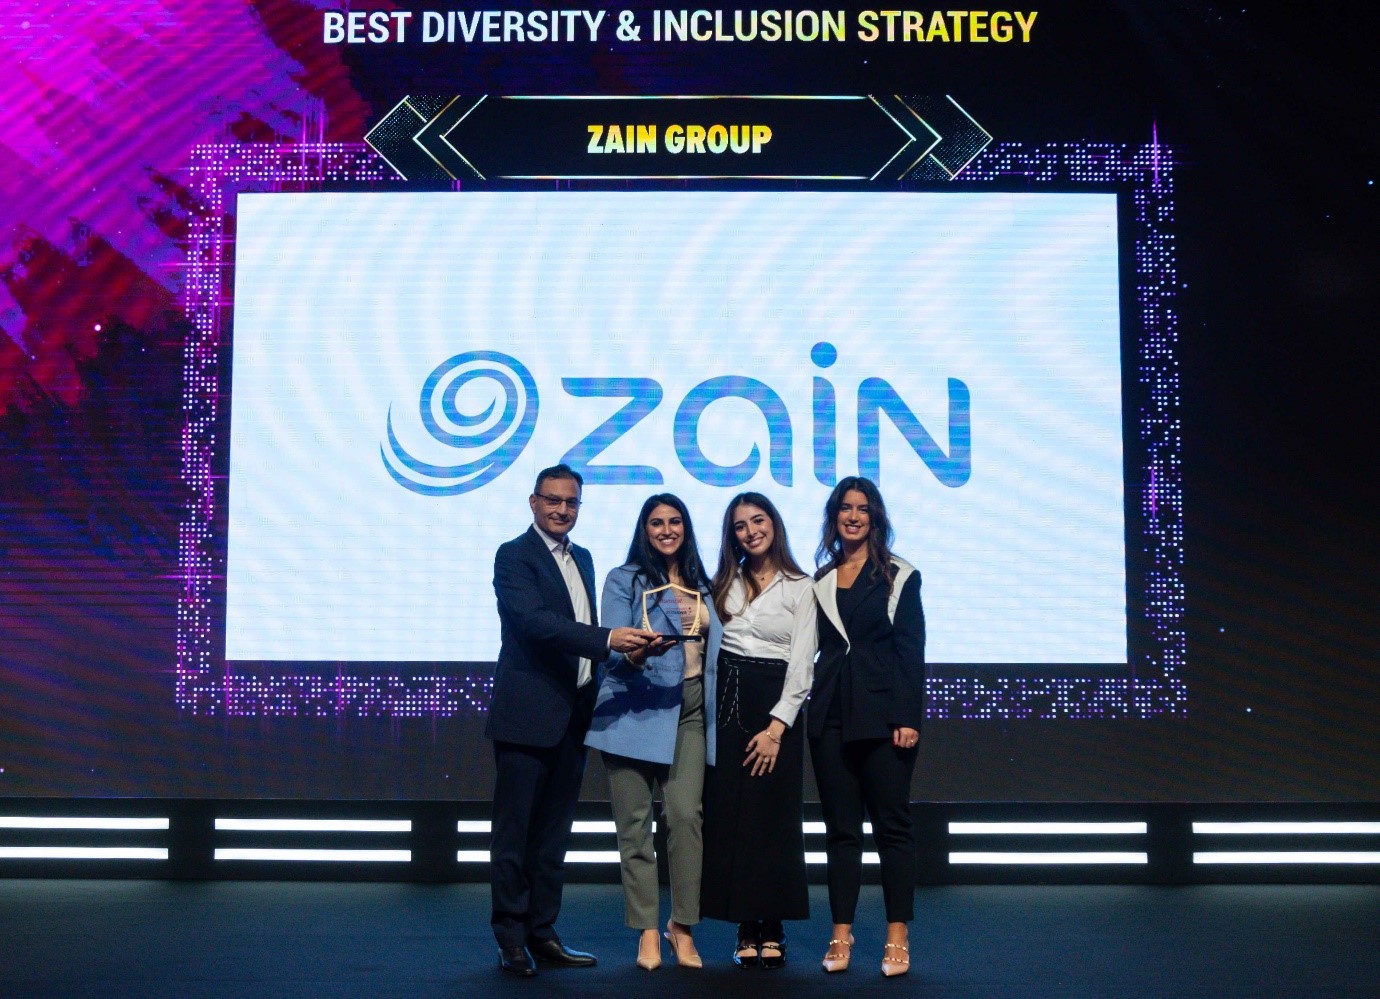 "زين" تفوز بجائزة أفضل استراتيجية في "التنوع والاشتمال" على مستوى الشرق الأوسط